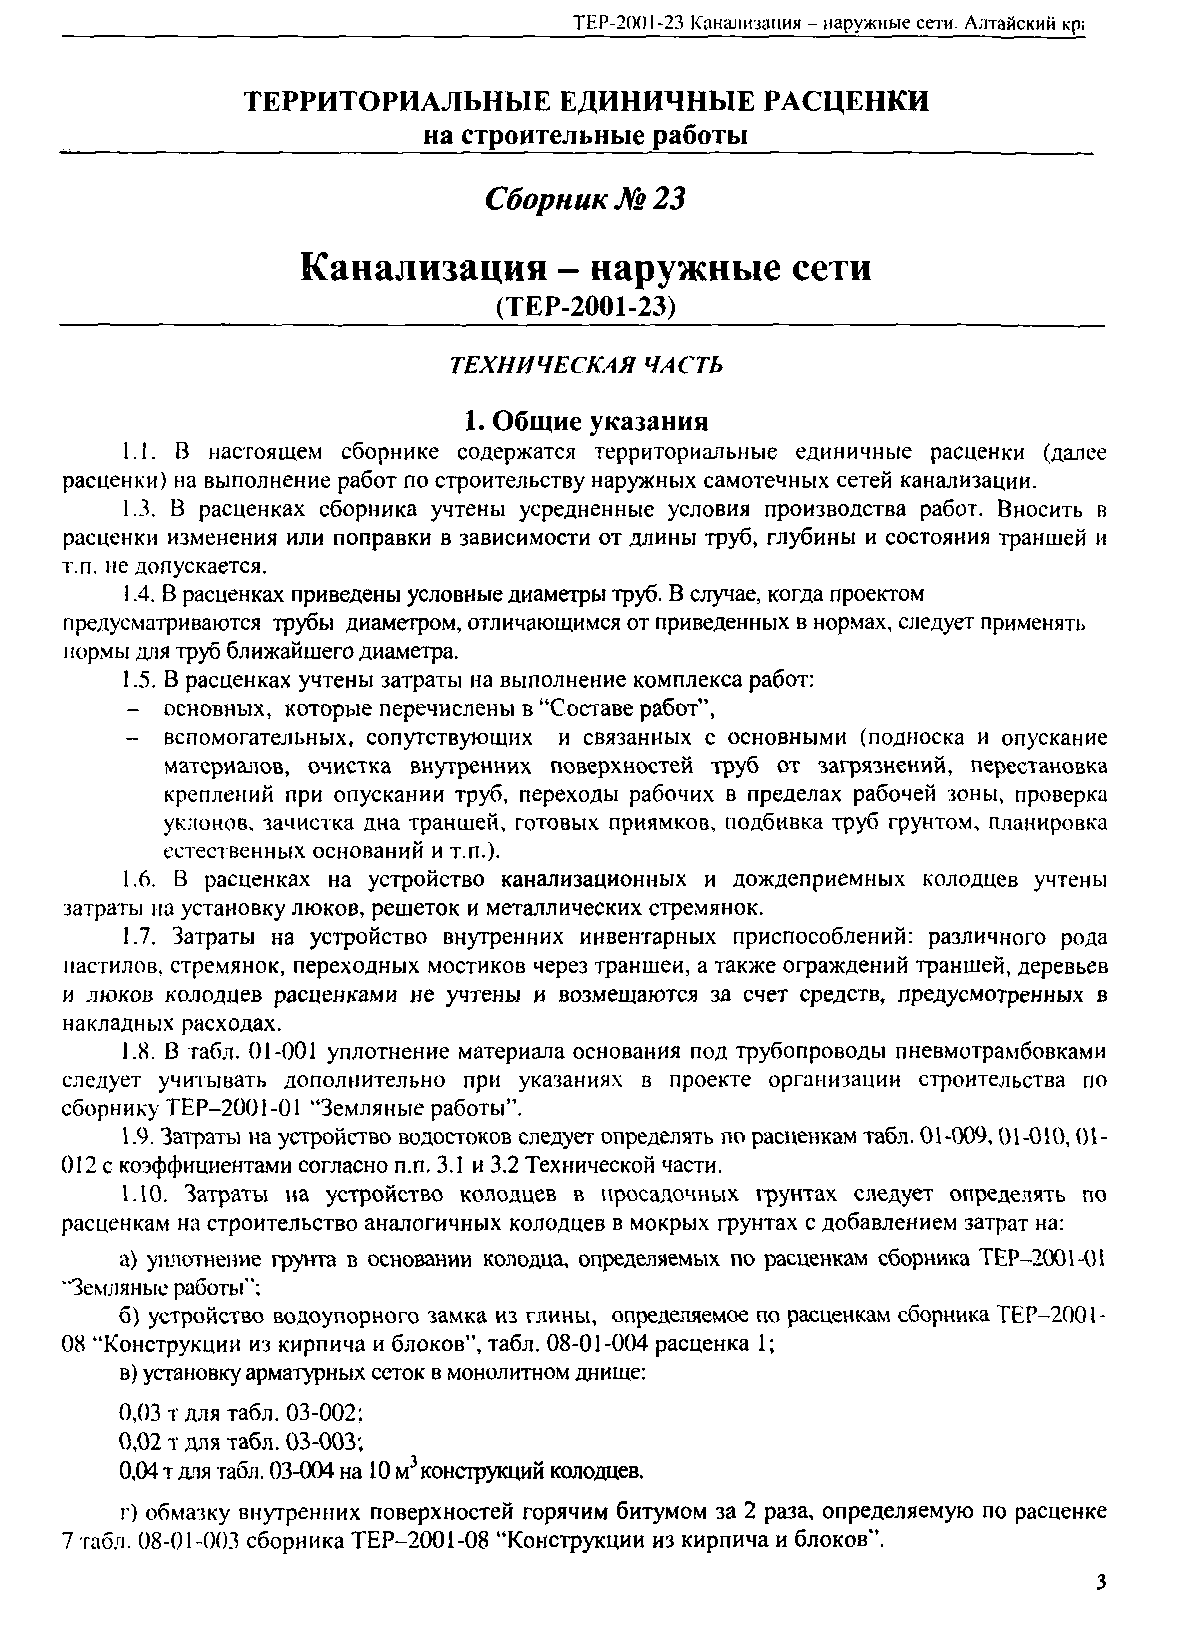 ТЕР Алтайский край 2001-23